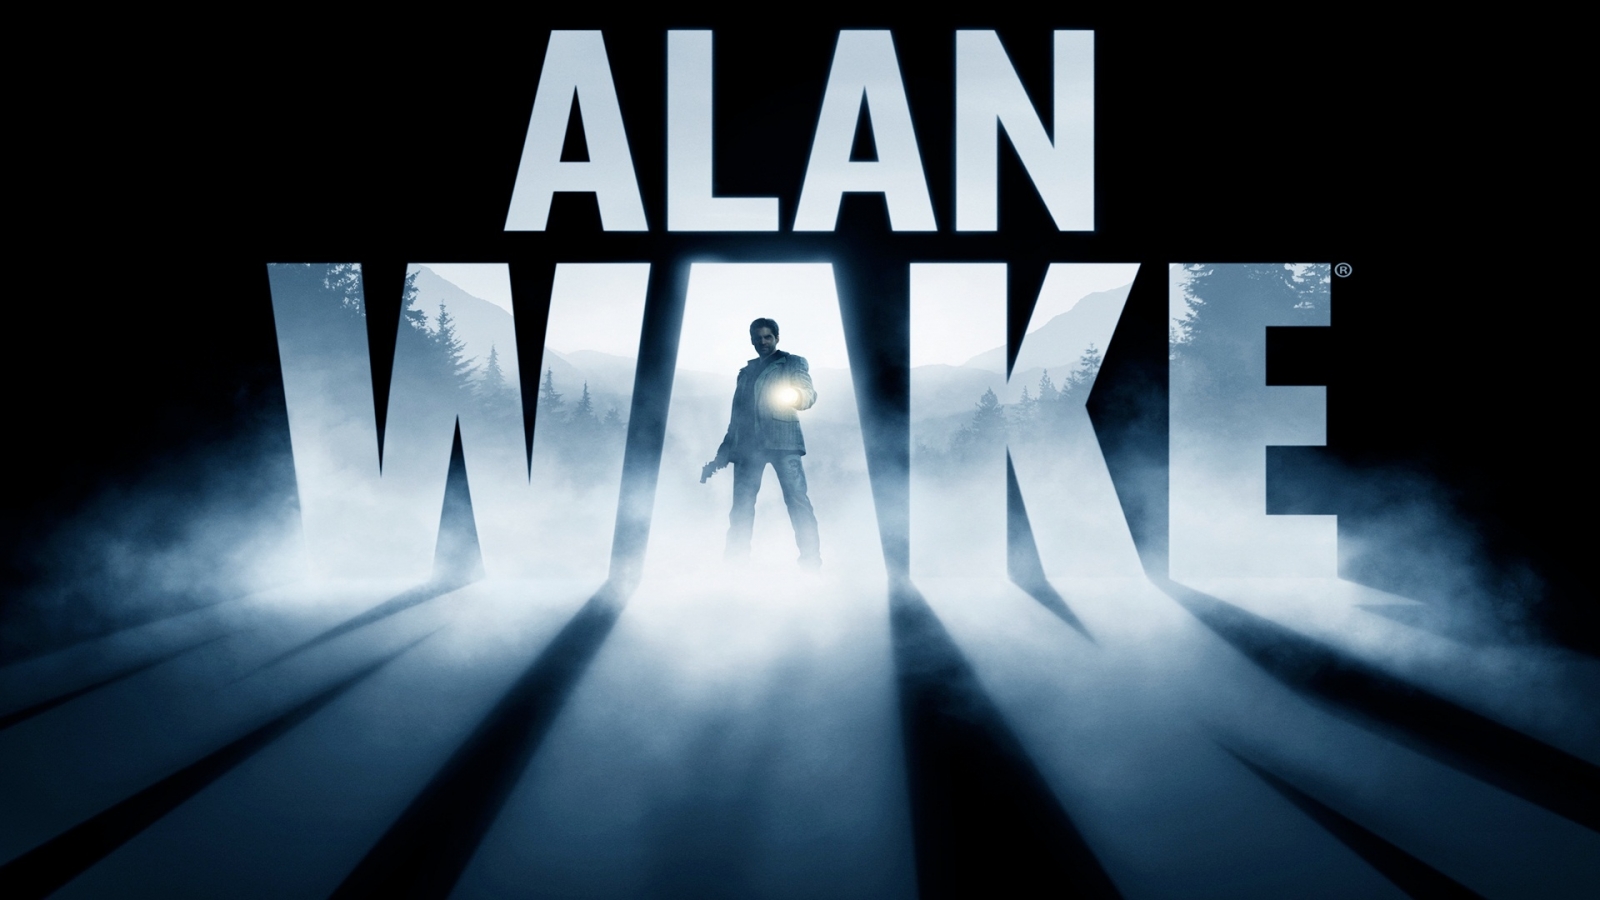 alan_wake_game-1920x1080.jpg